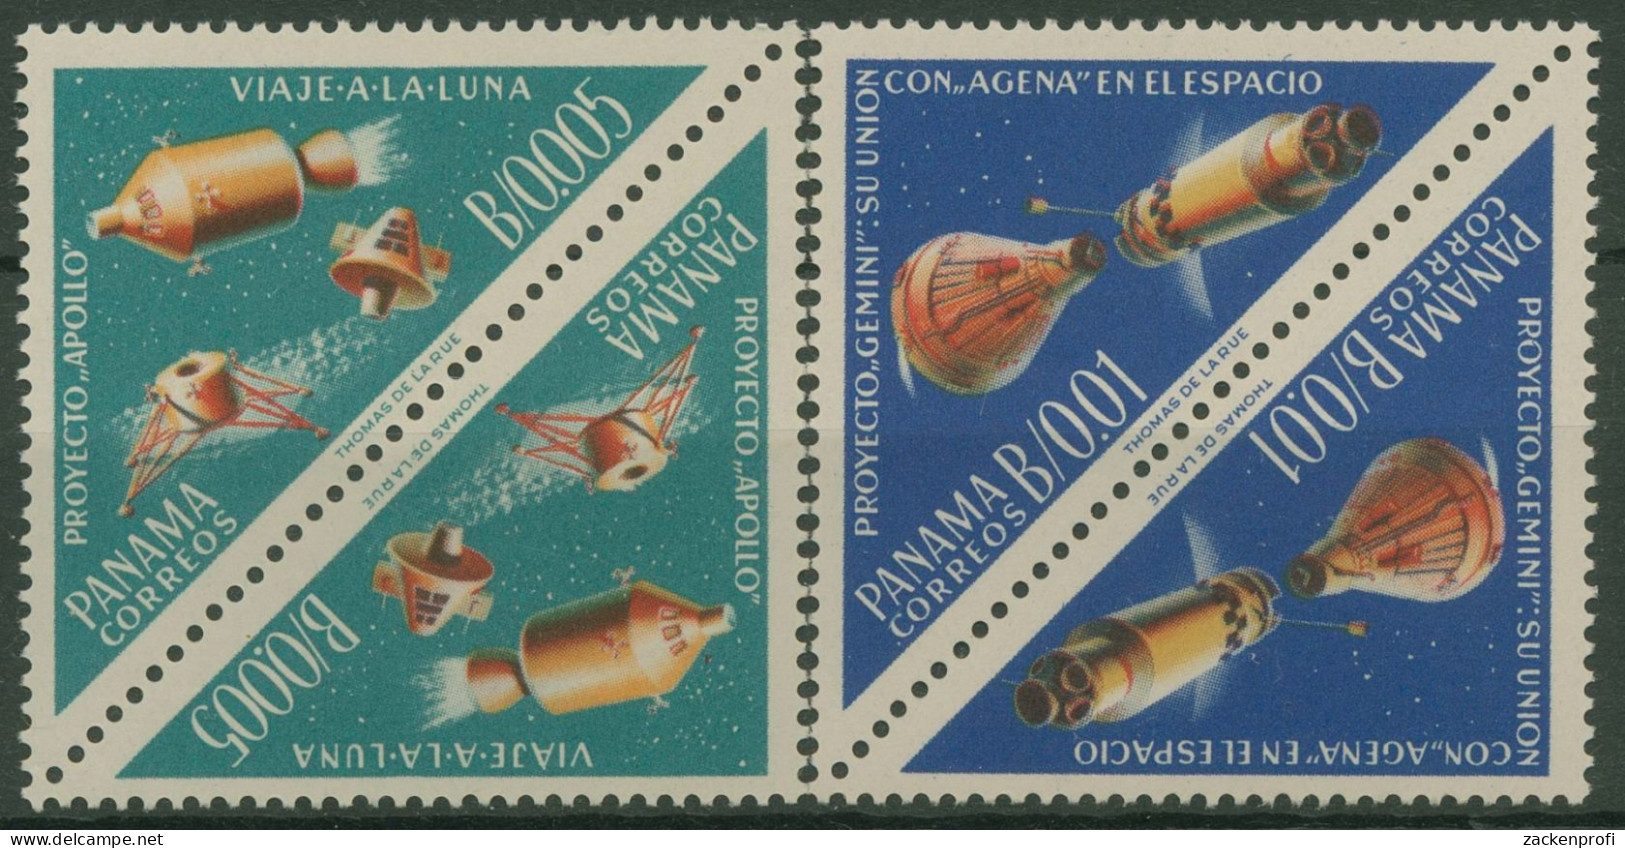 Panama 1964 Raumfahrt Apollo Gemini Kehrdruckpaare 724/25 KD Postfrisch - Panamá